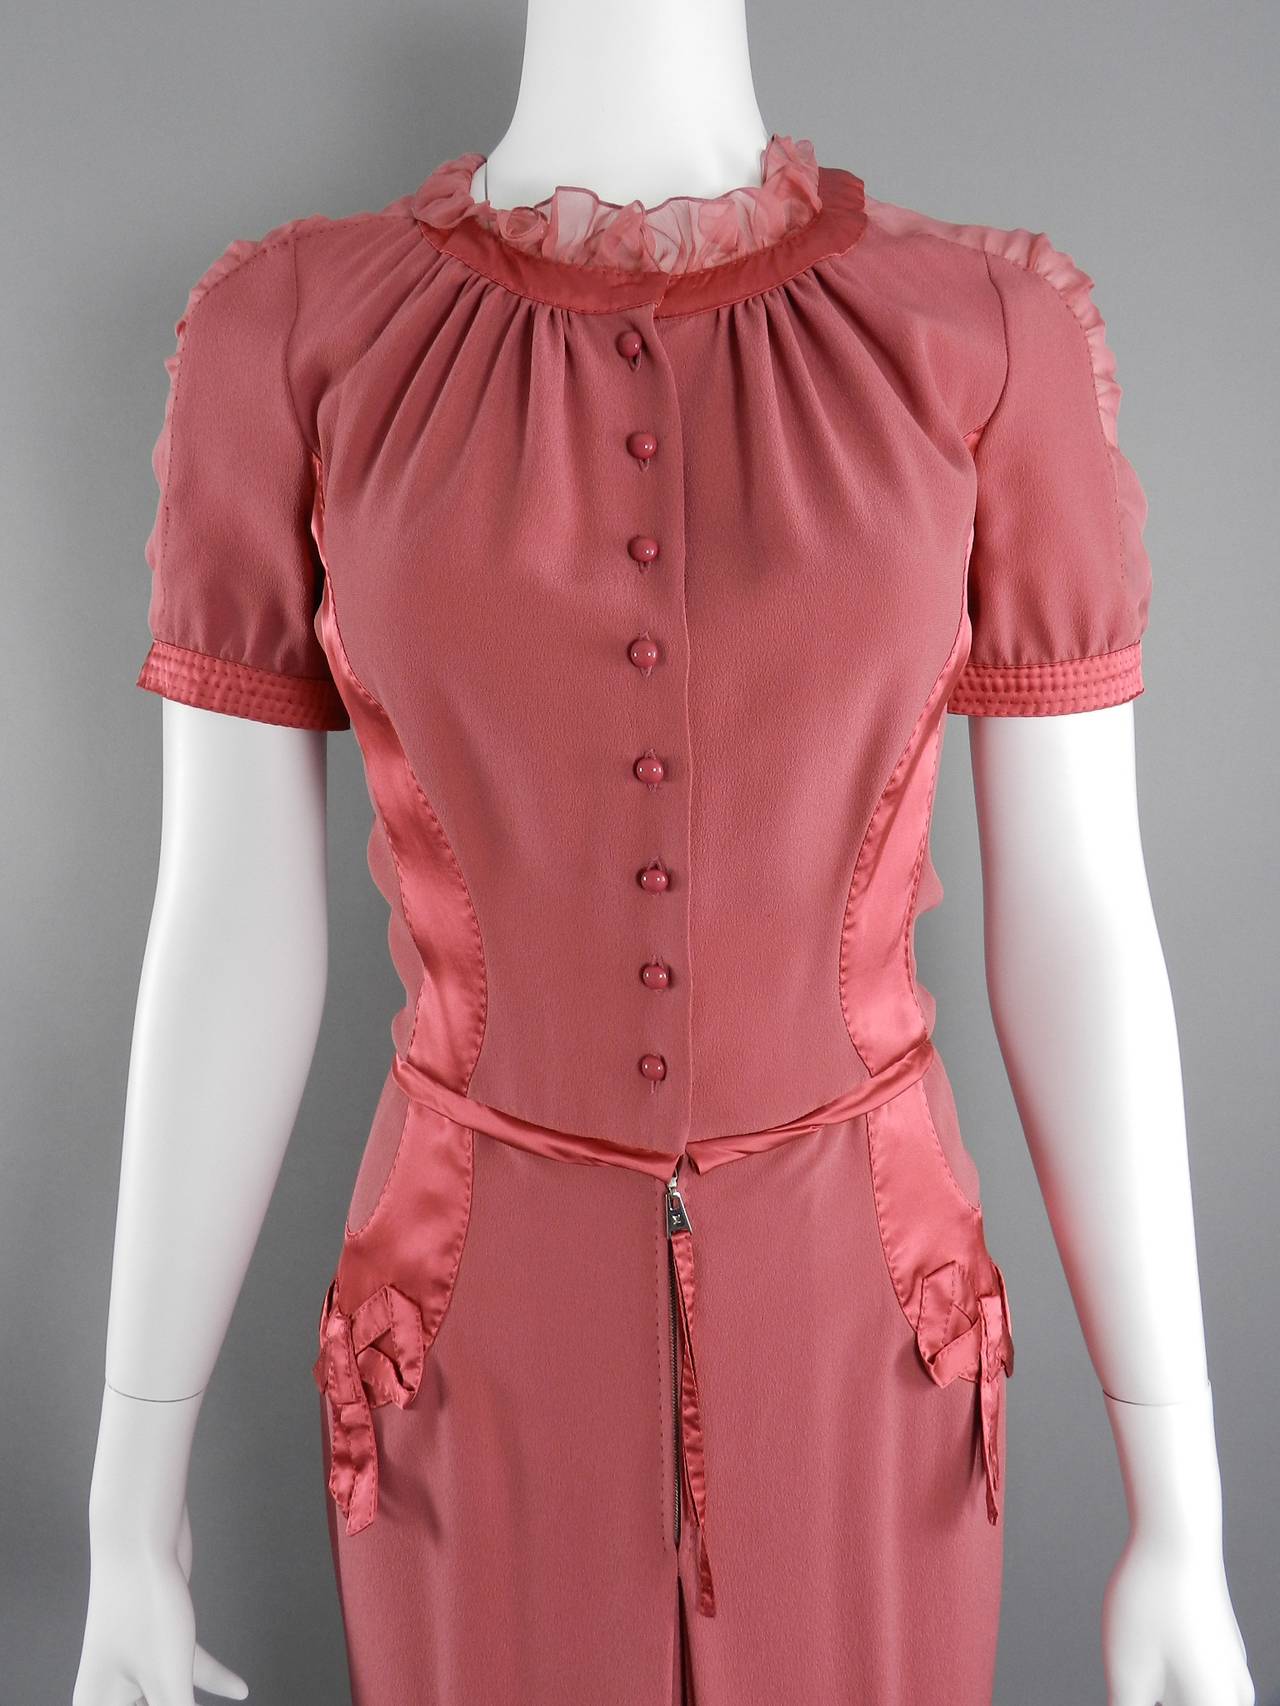 Louis Vuitton Rose Color 1930's Vintage Style Dress 2